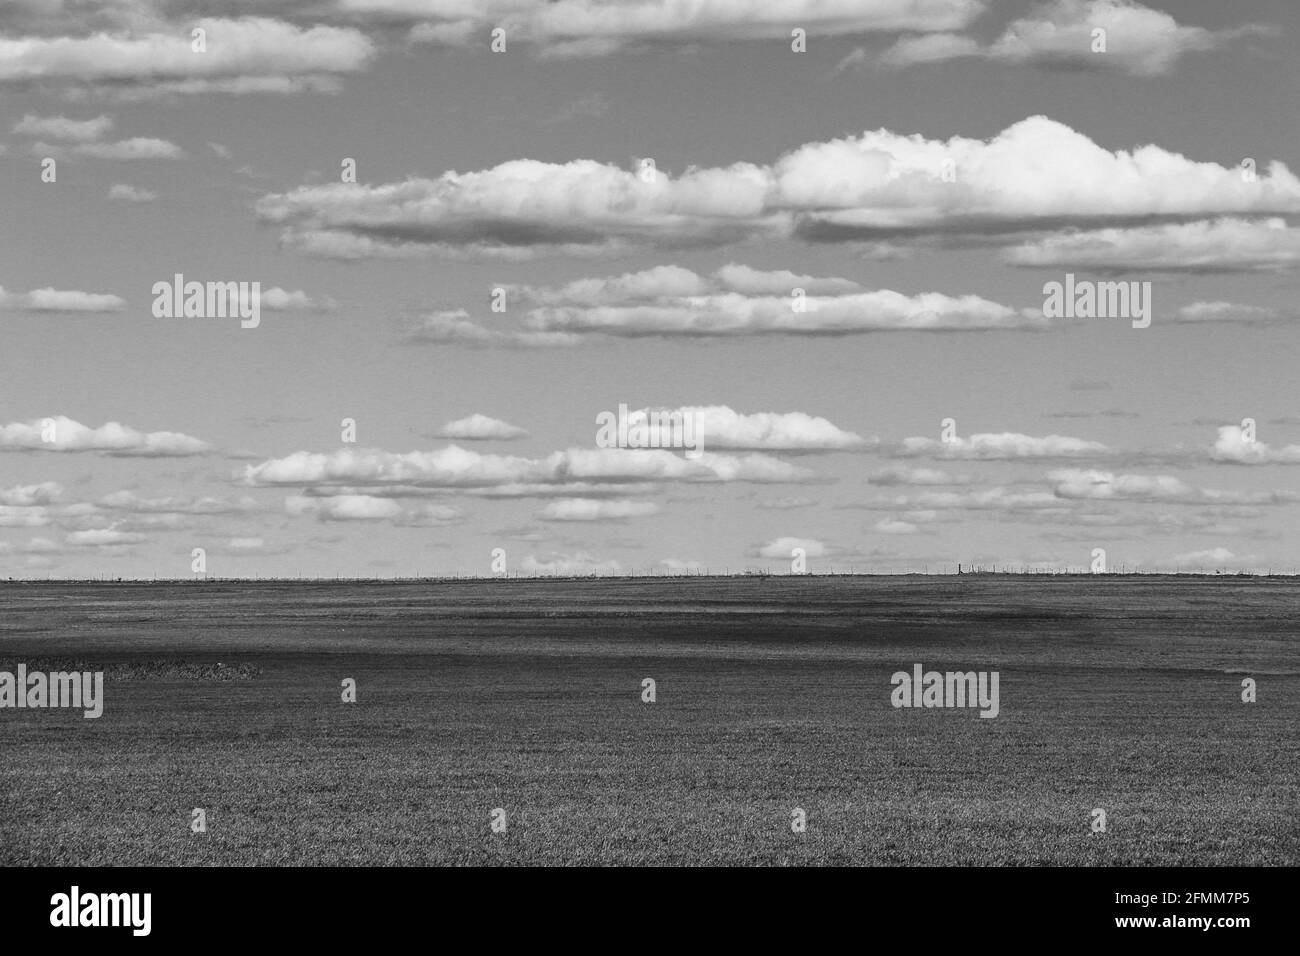 campo bianco e nero e cielo nuvoloso con alto vintage il filtro di contrasto si applica come un halloween o abbandonato desolato desertato scena Foto Stock